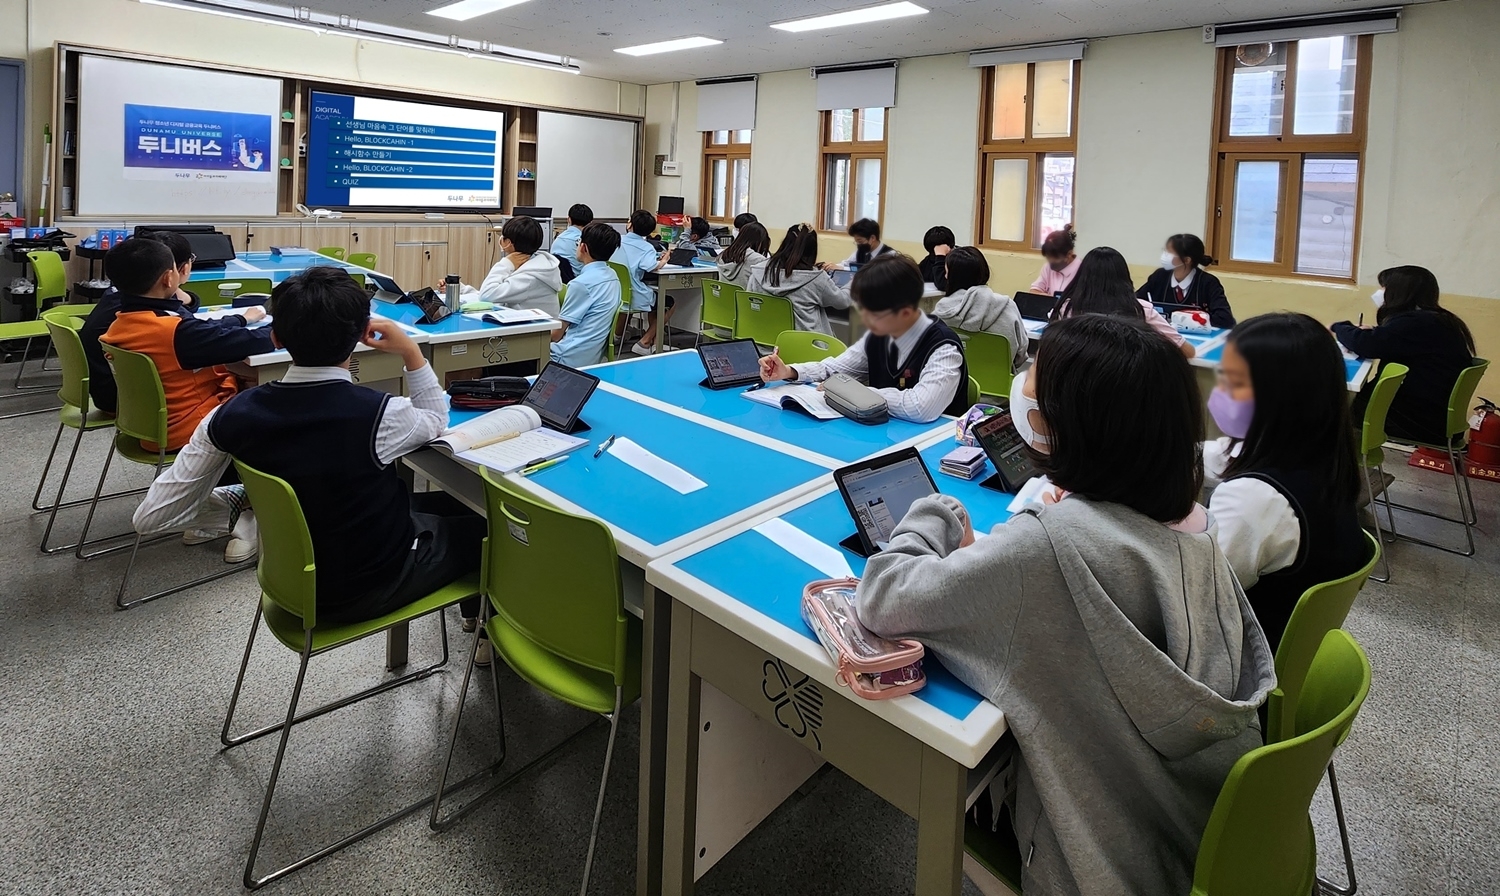 디지털 금융 교육 프로그램 ‘두니버스’ 참여 학생들이 수업을 듣고 있는 모습./사진제공=두나무(Dunamu‧대표 이석우)